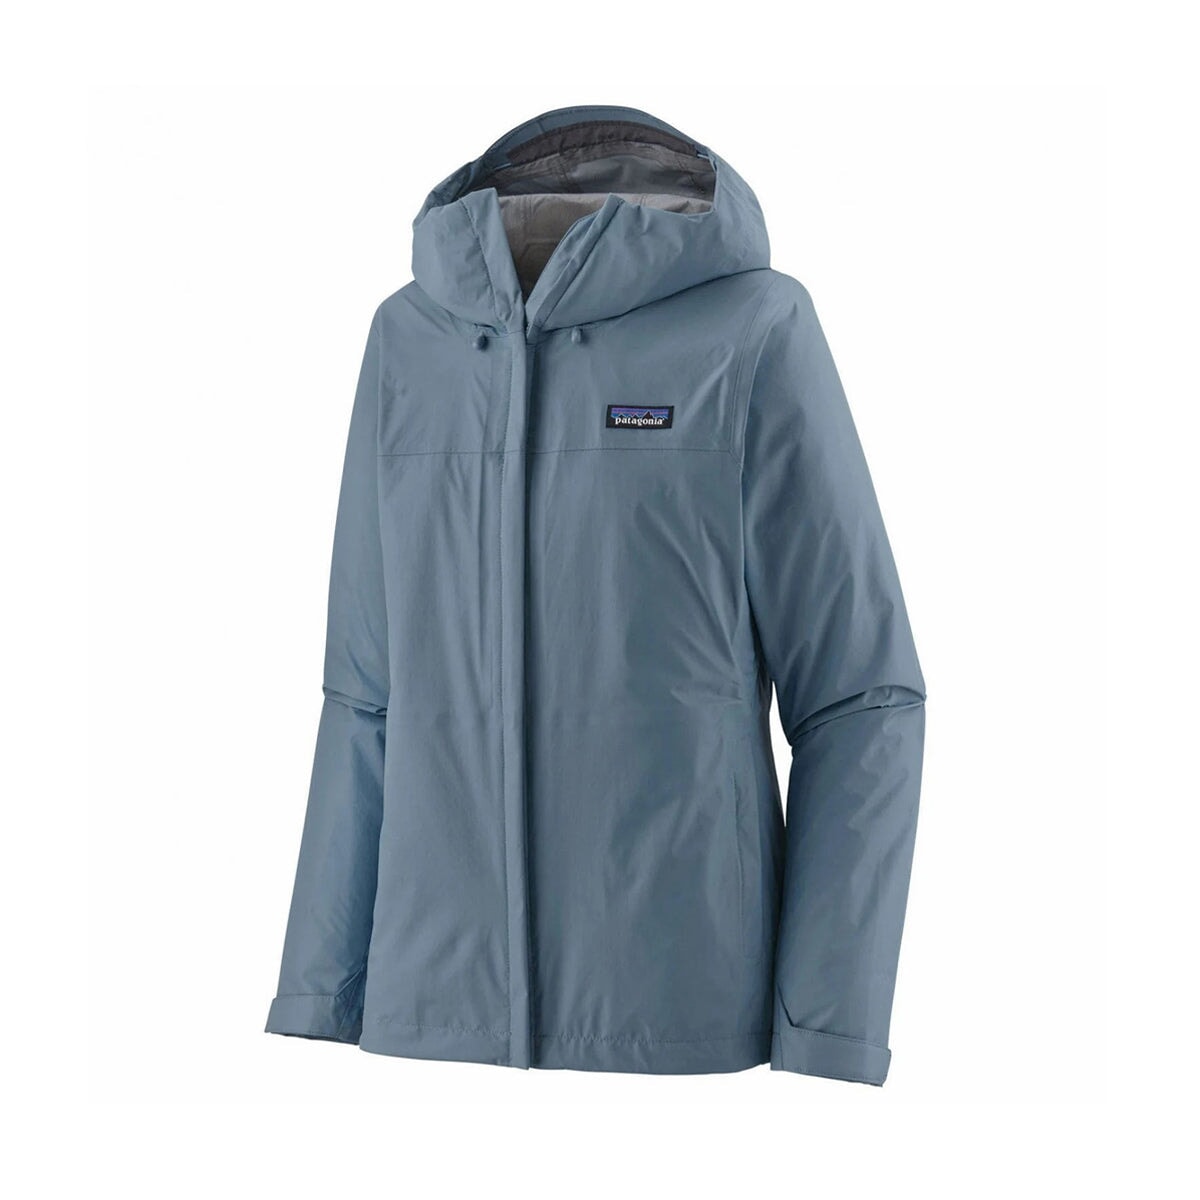 Patagonia Women's Torrentshell 3L Jacket - Light Plume Grey Jacke Patagonia 